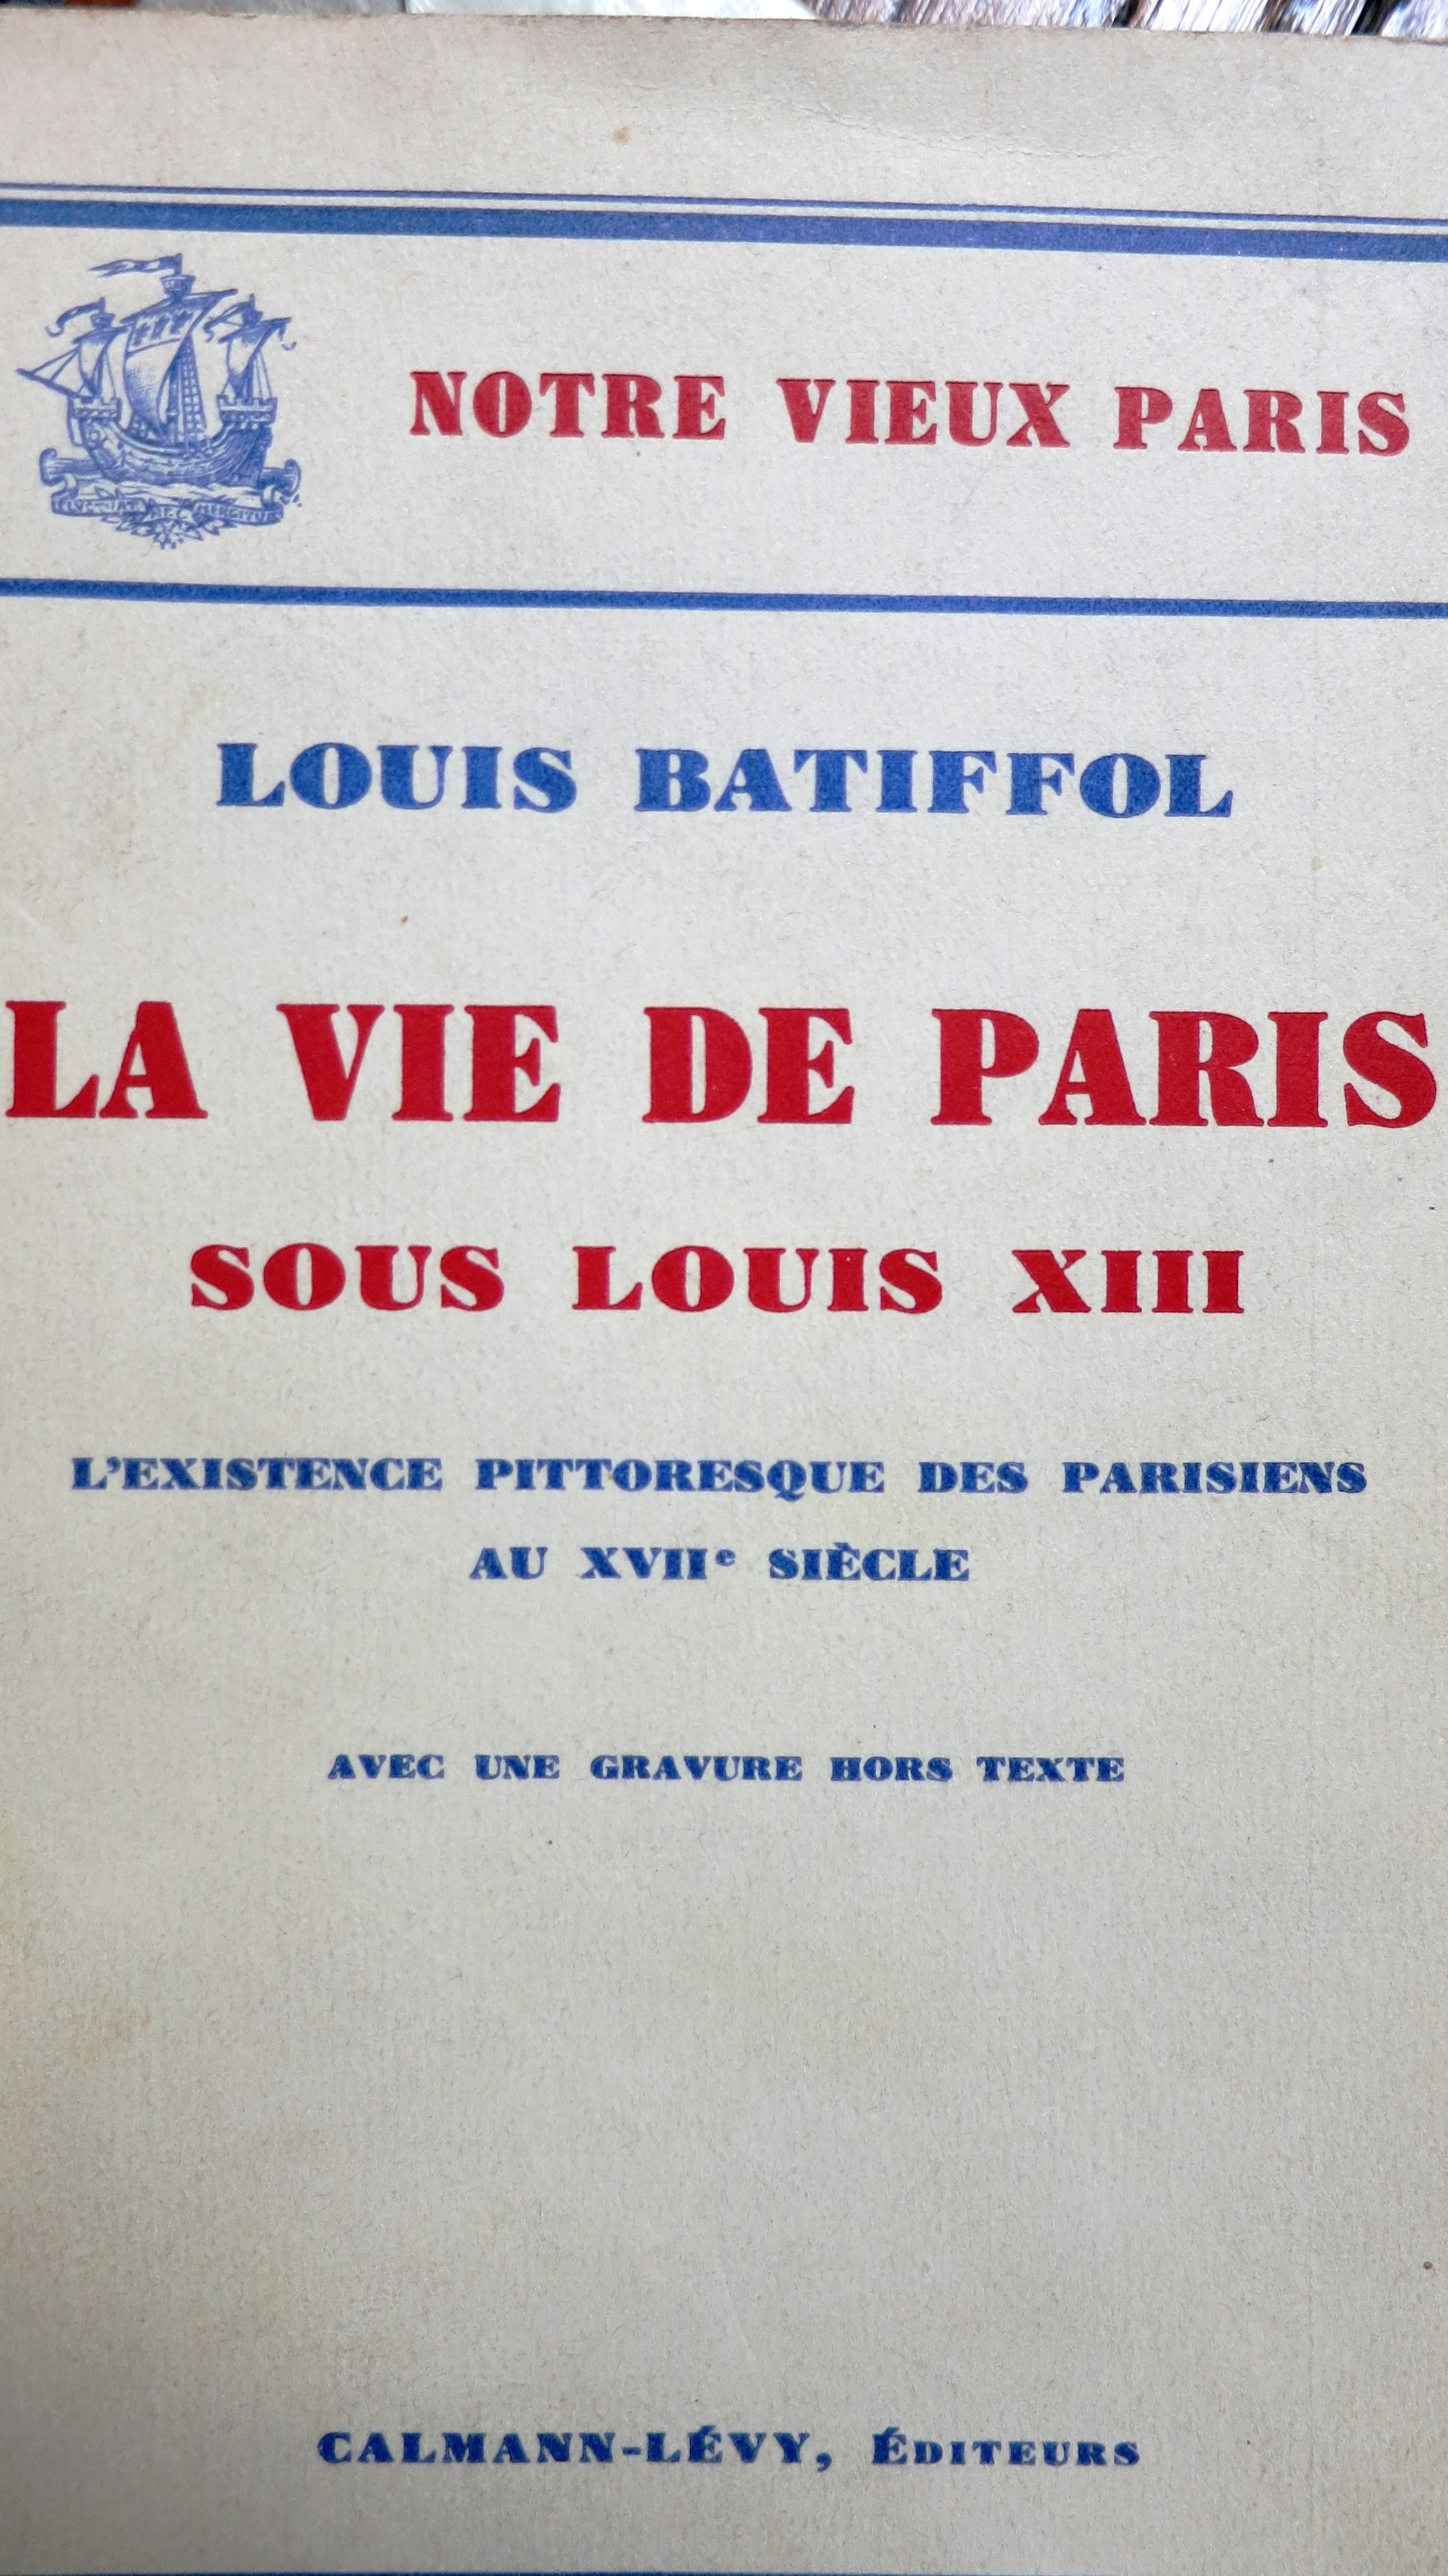 Notre vieux Paris. La vie de Paris sous Louis XIII